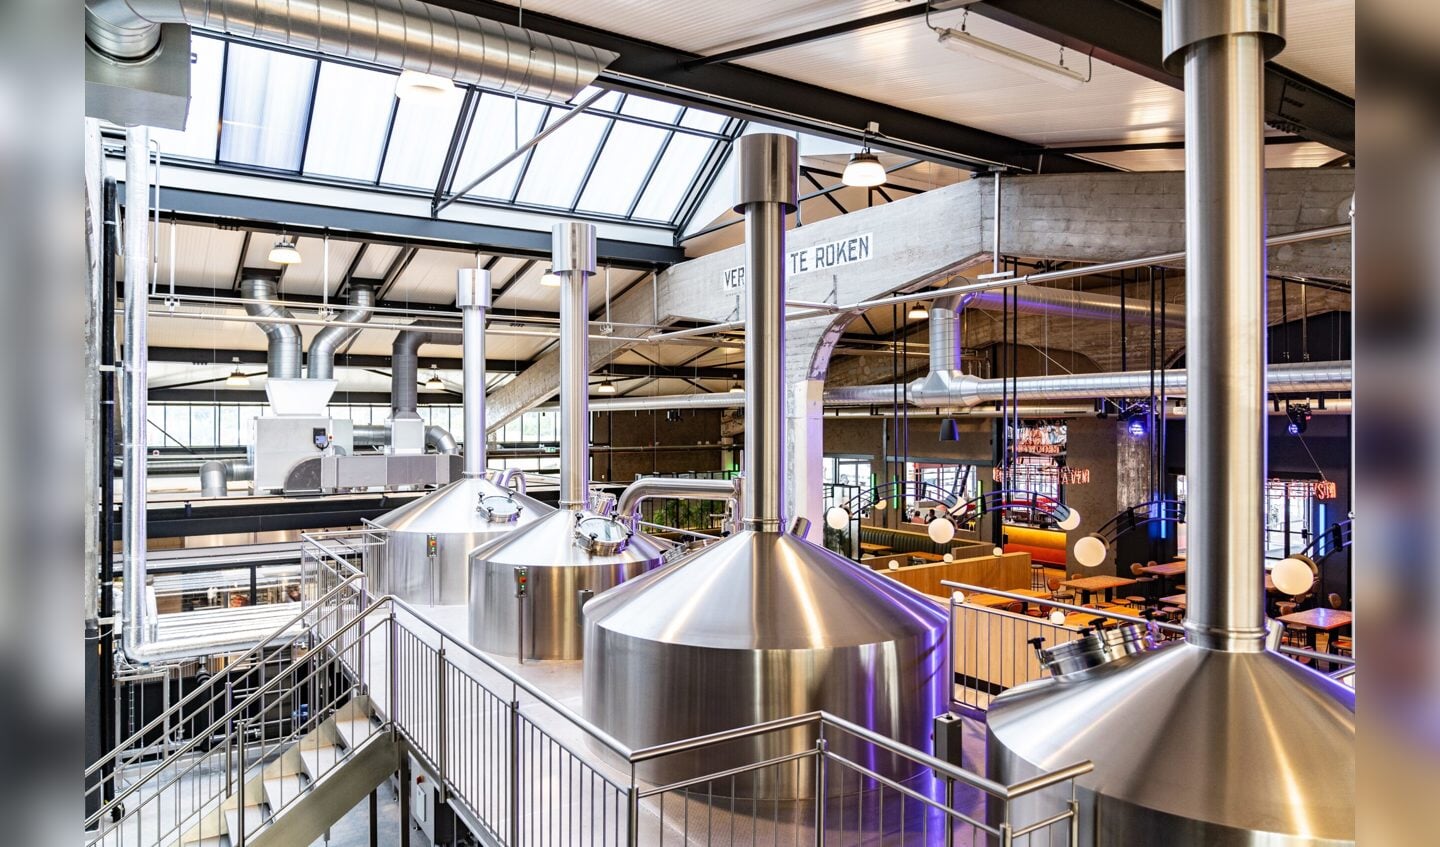 Bieretitet voor de ‘Mayflower Bock’ dat door middel van kunstmatige intelligentie gegenereerd is|de duurzame brouwketels van de Stadshaven Brouwerij Rotterdam|